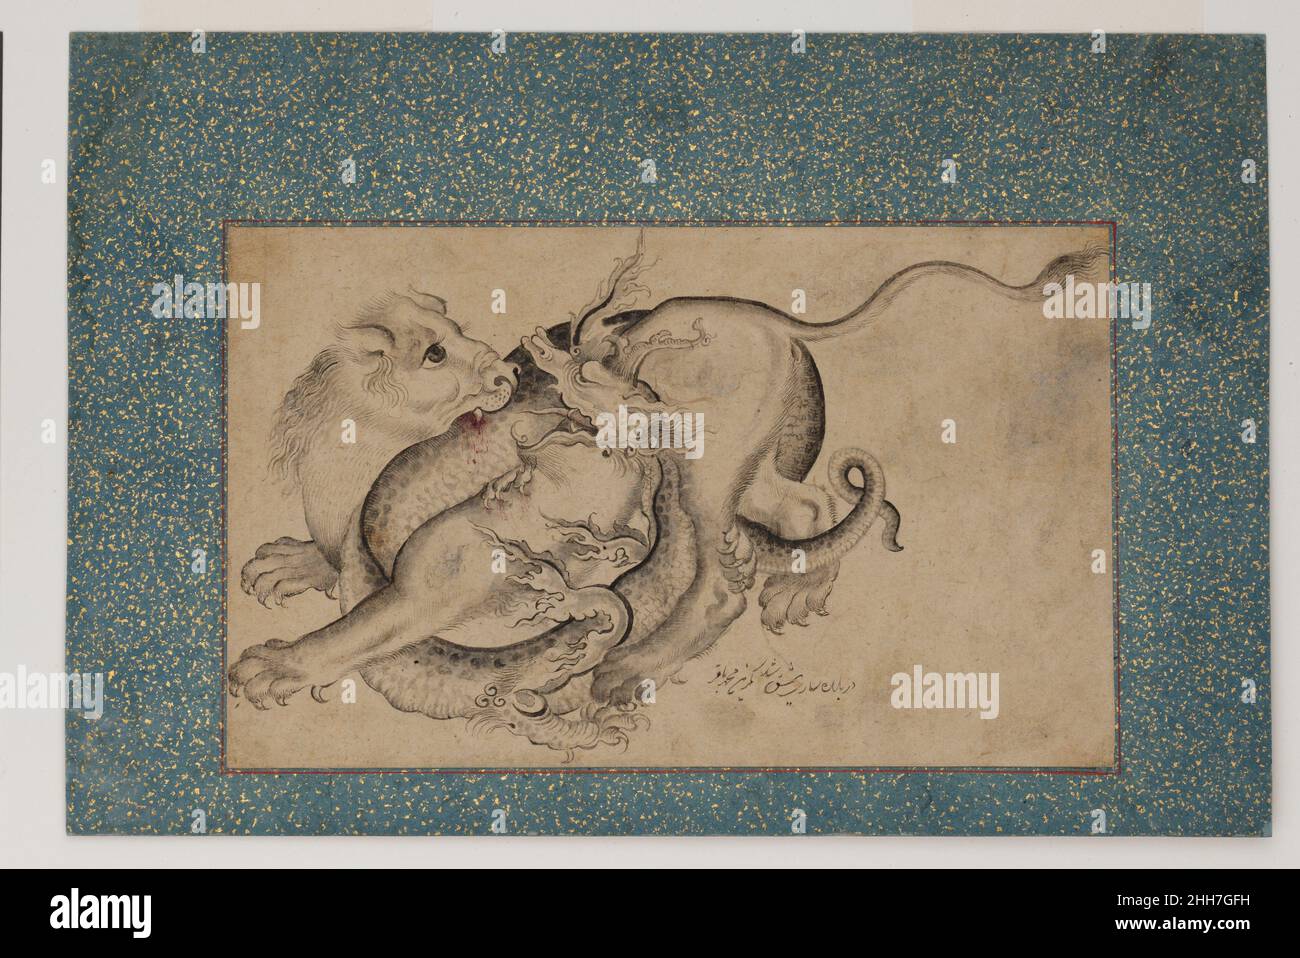 Lion et Dragon au combat deuxième demi 18th-siècle peinture par Muhammad Baqir Un nombre important d'œuvres de Muhammad Baqir survivent, y compris plusieurs frontières et peintures d'une page, datant de 1764, qui proviennent d'un album dispersé.Certains d'entre eux sont basés sur des prototypes européens tandis que d'autres décrivent des fleurs, reflétant le vogue des peintures d'oiseaux et de fleurs qui se sont développées au XVIIIe siècle et a été particulièrement populaire dans l'Iran du XIXe siècle.tandis que le sujet des dragons au combat avec des animaux réels ou imaginaires a une longue histoire en peinture persane,Originaire des Mongols dans le TH Banque D'Images